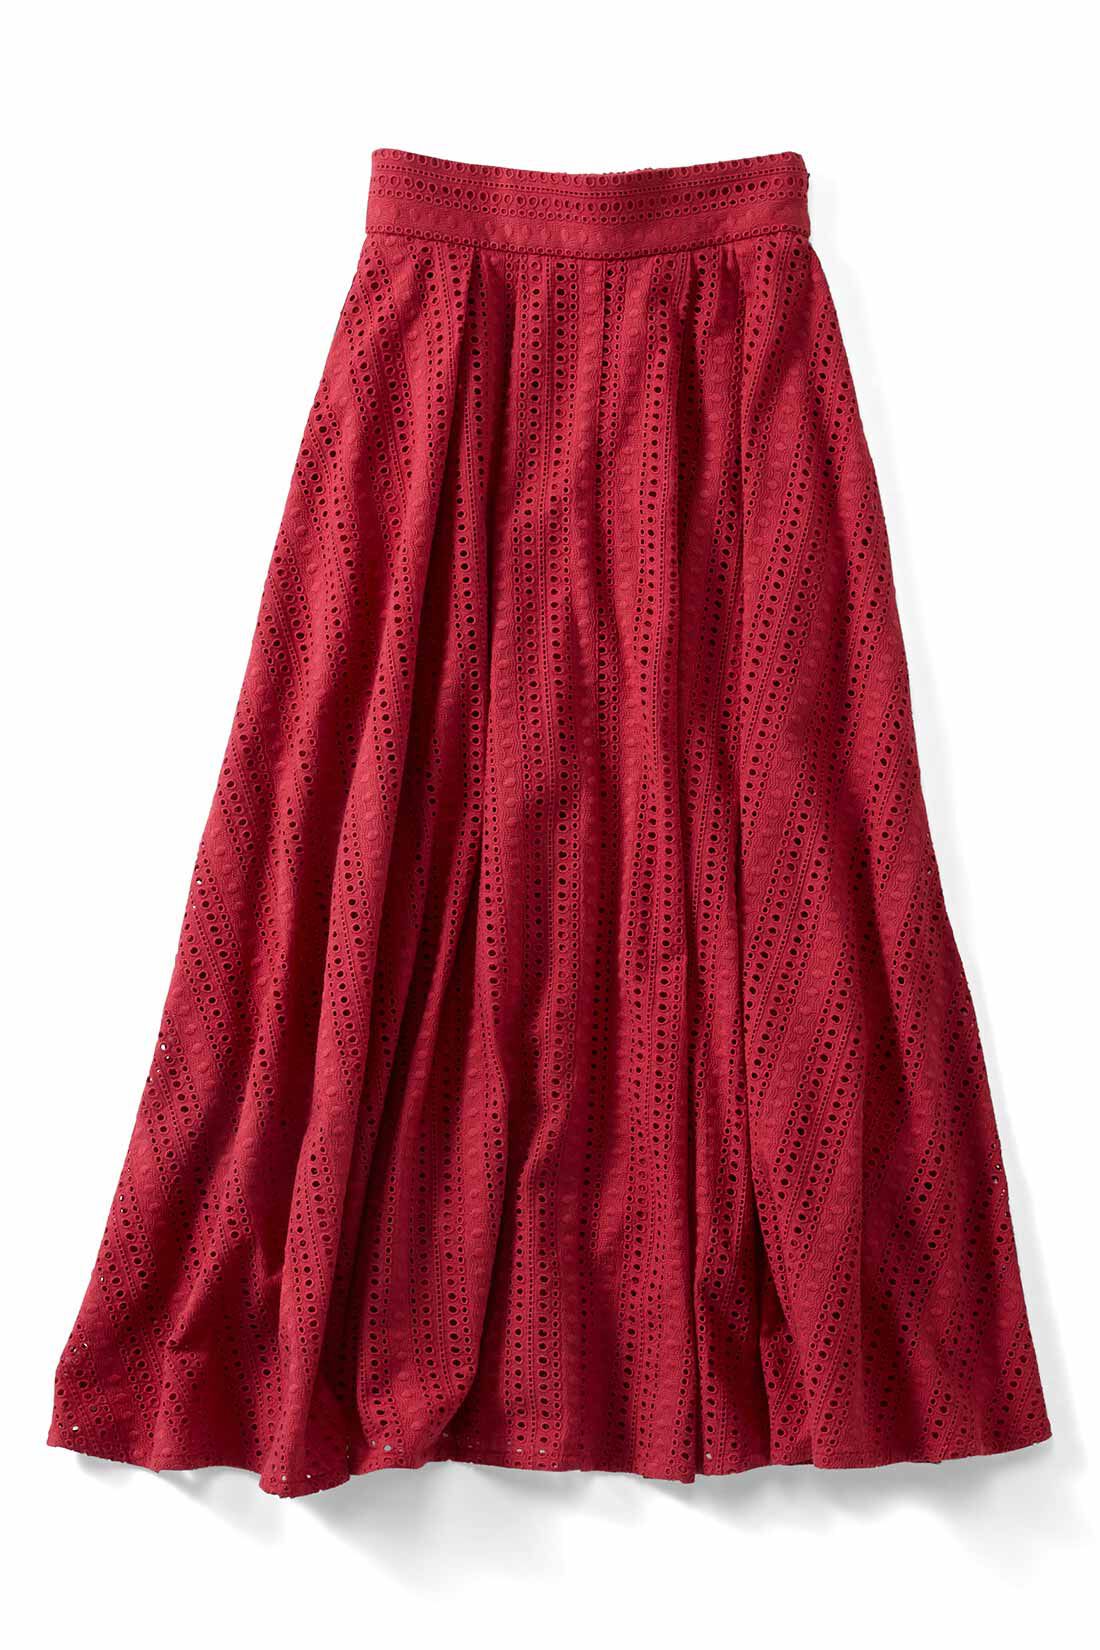 Real Stock|IEDIT[イディット]　ボーラーレースにときめく ボリュームロングスカート〈レッド〉|〈レッド〉 スカートは安心の裏地付き。すそ部分だけ軽やかな透け感を楽しめます。